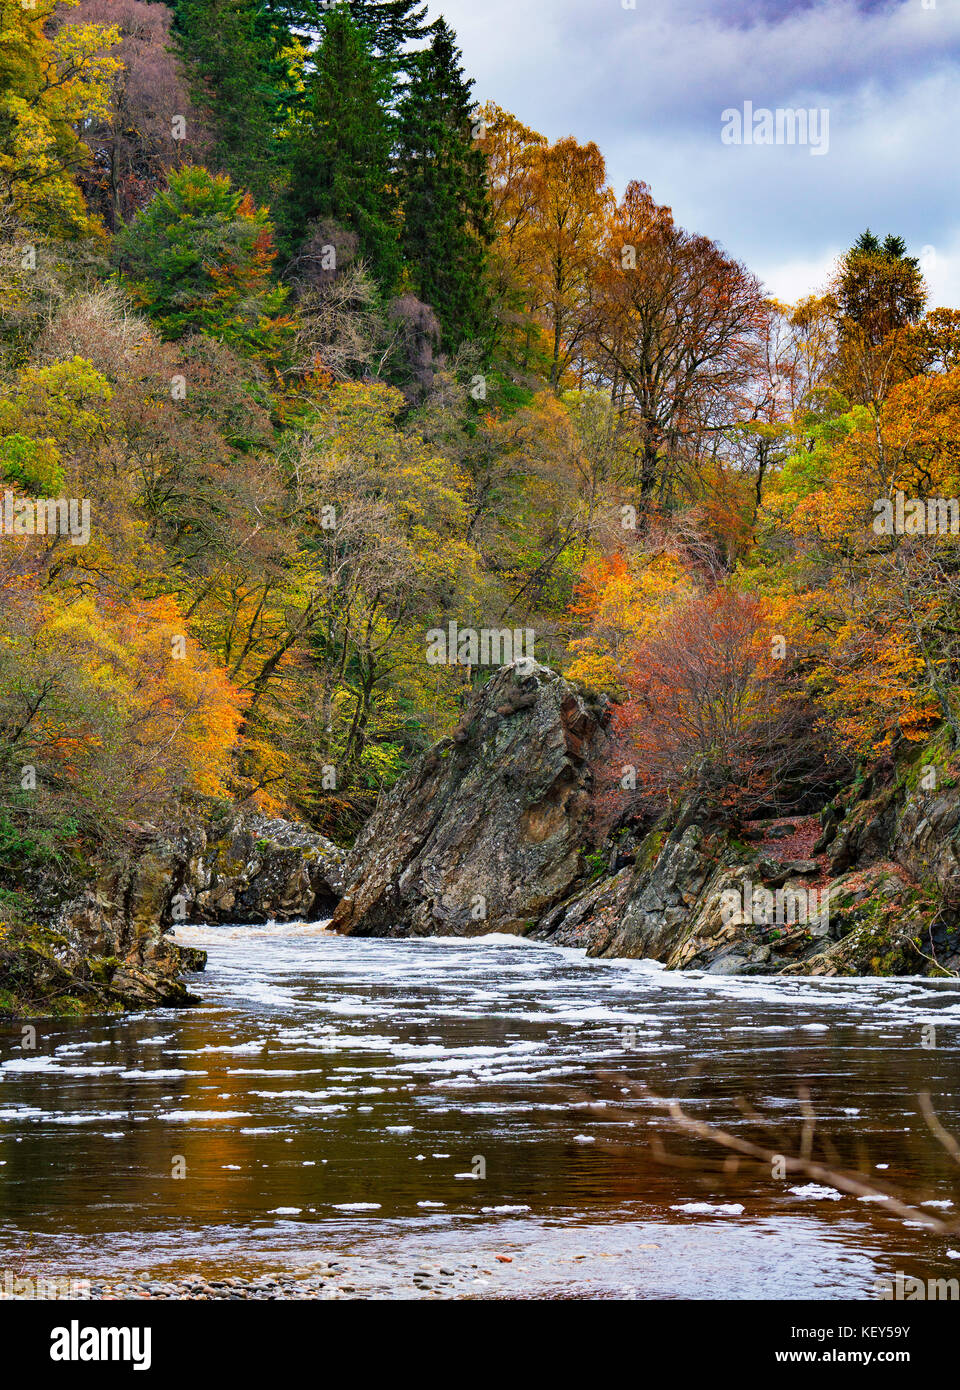 Spektakuläre Herbstfarben in natürlichen Wäldern am Ufer des Flusses Garry am historischen Pass von Killiecrankie bei Soldier's Leap in der Nähe von Pitlochry. Stockfoto